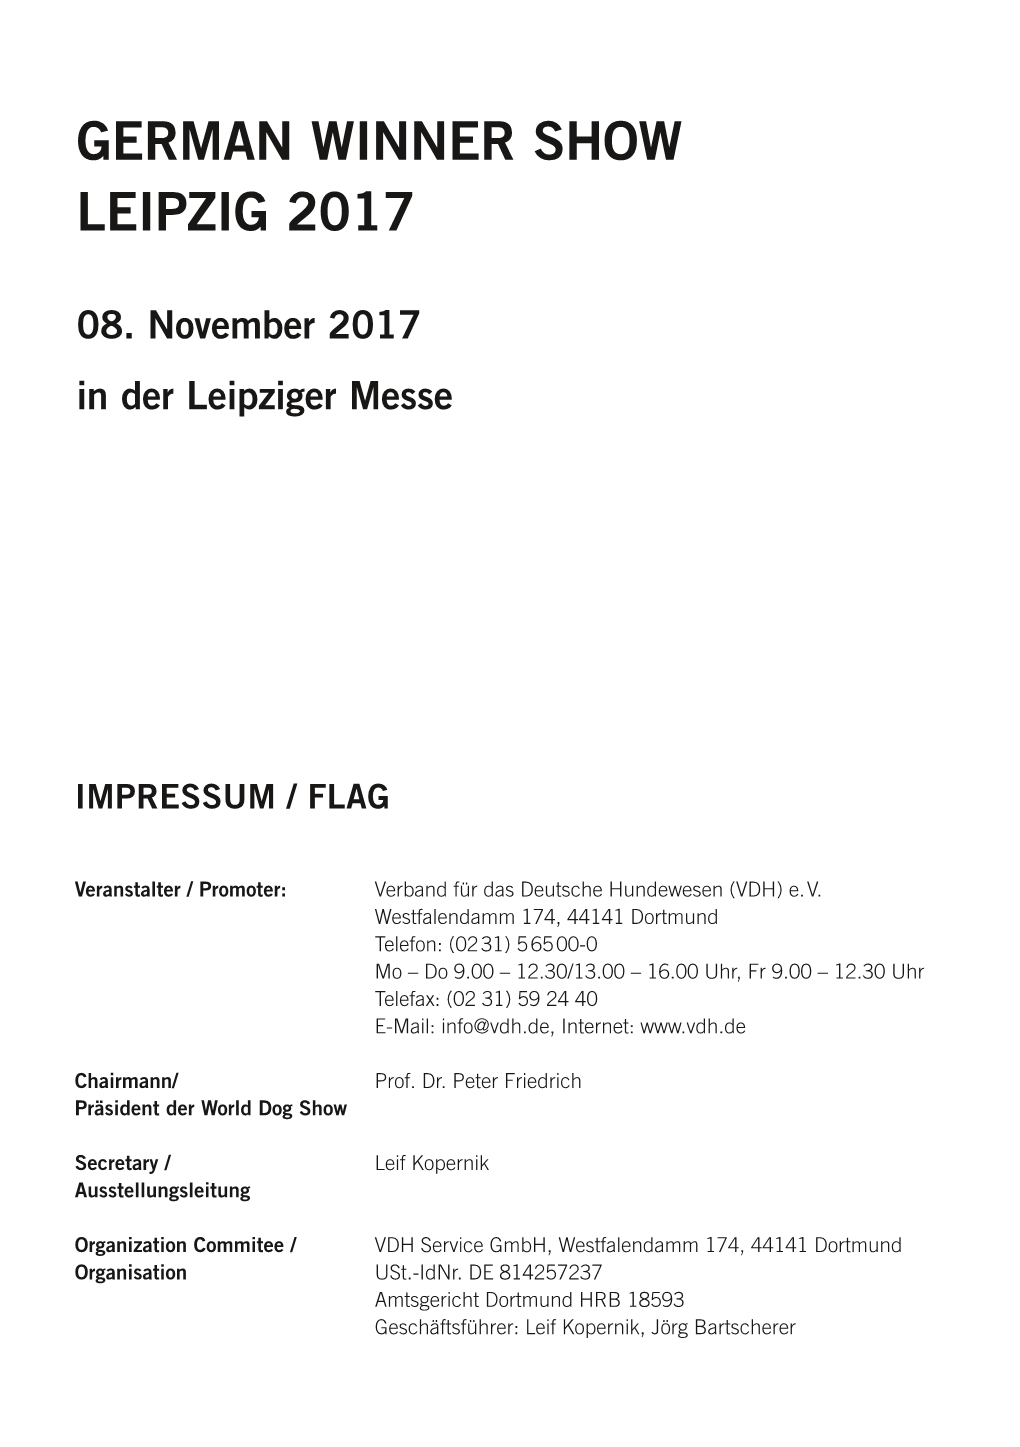 German Winner Show Leipzig 2017